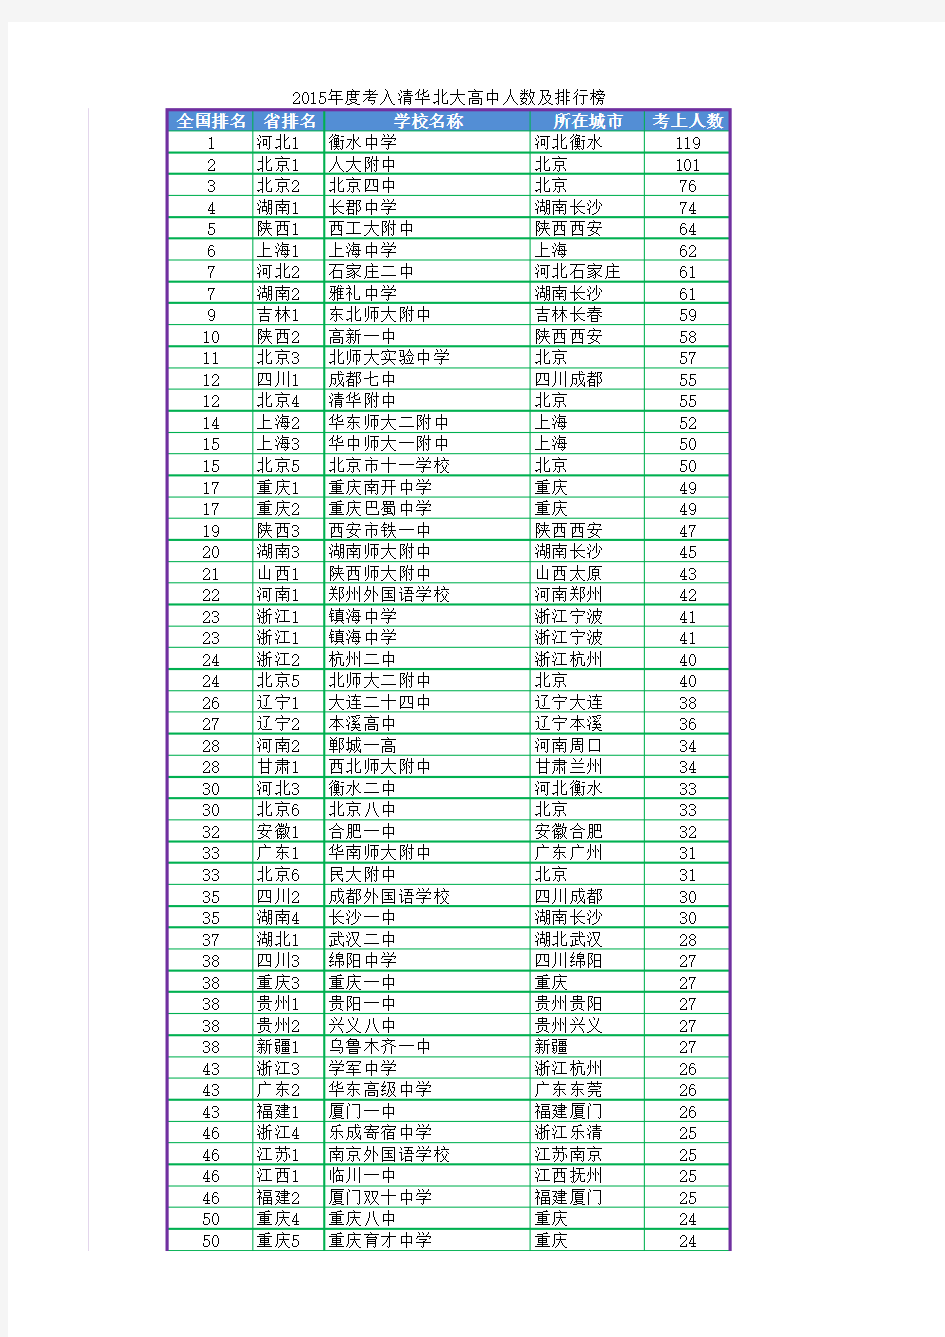 2015年全国高中考入清华北大明细表